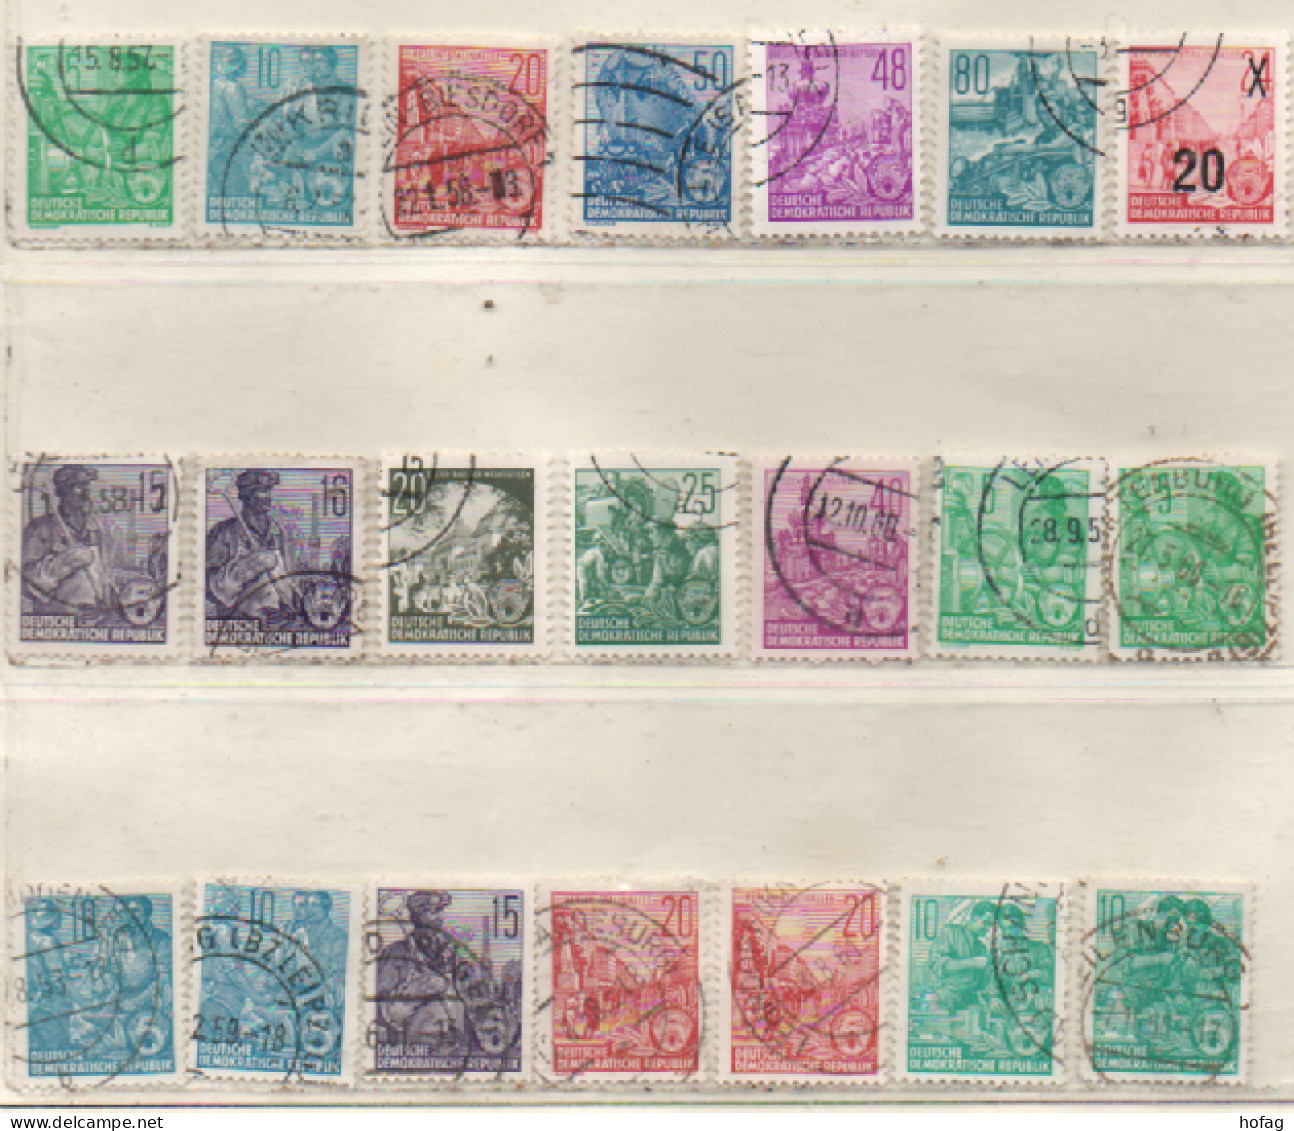 DDR 1953-1959 Fünfjahresplan Siehe Bild 21 Marken/Varianten, Gestempelt GDR Used - Gebraucht